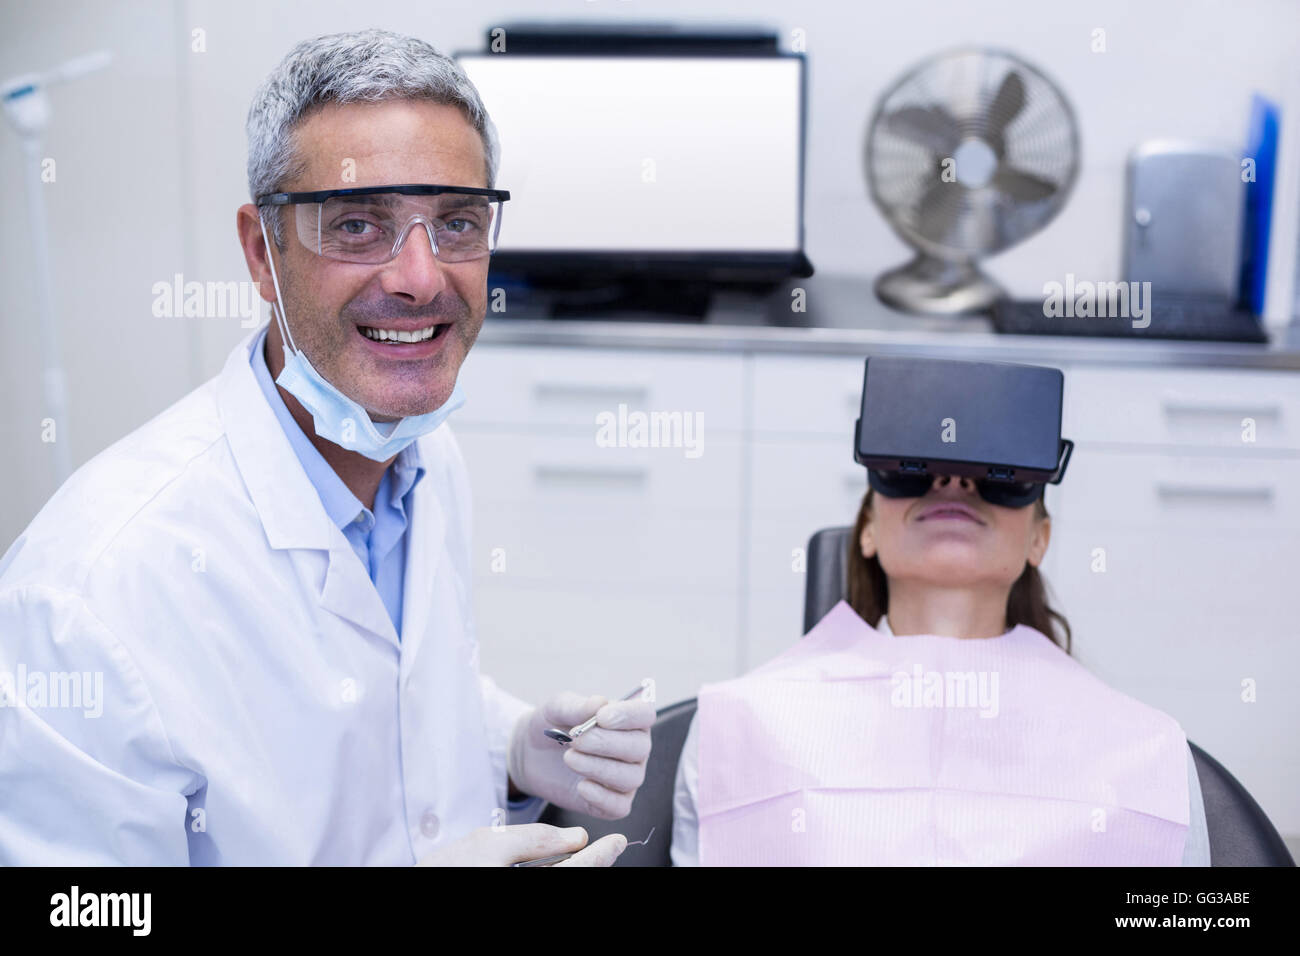 Femme de casque de réalité virtuelle lors d'une visite dentaire Banque D'Images